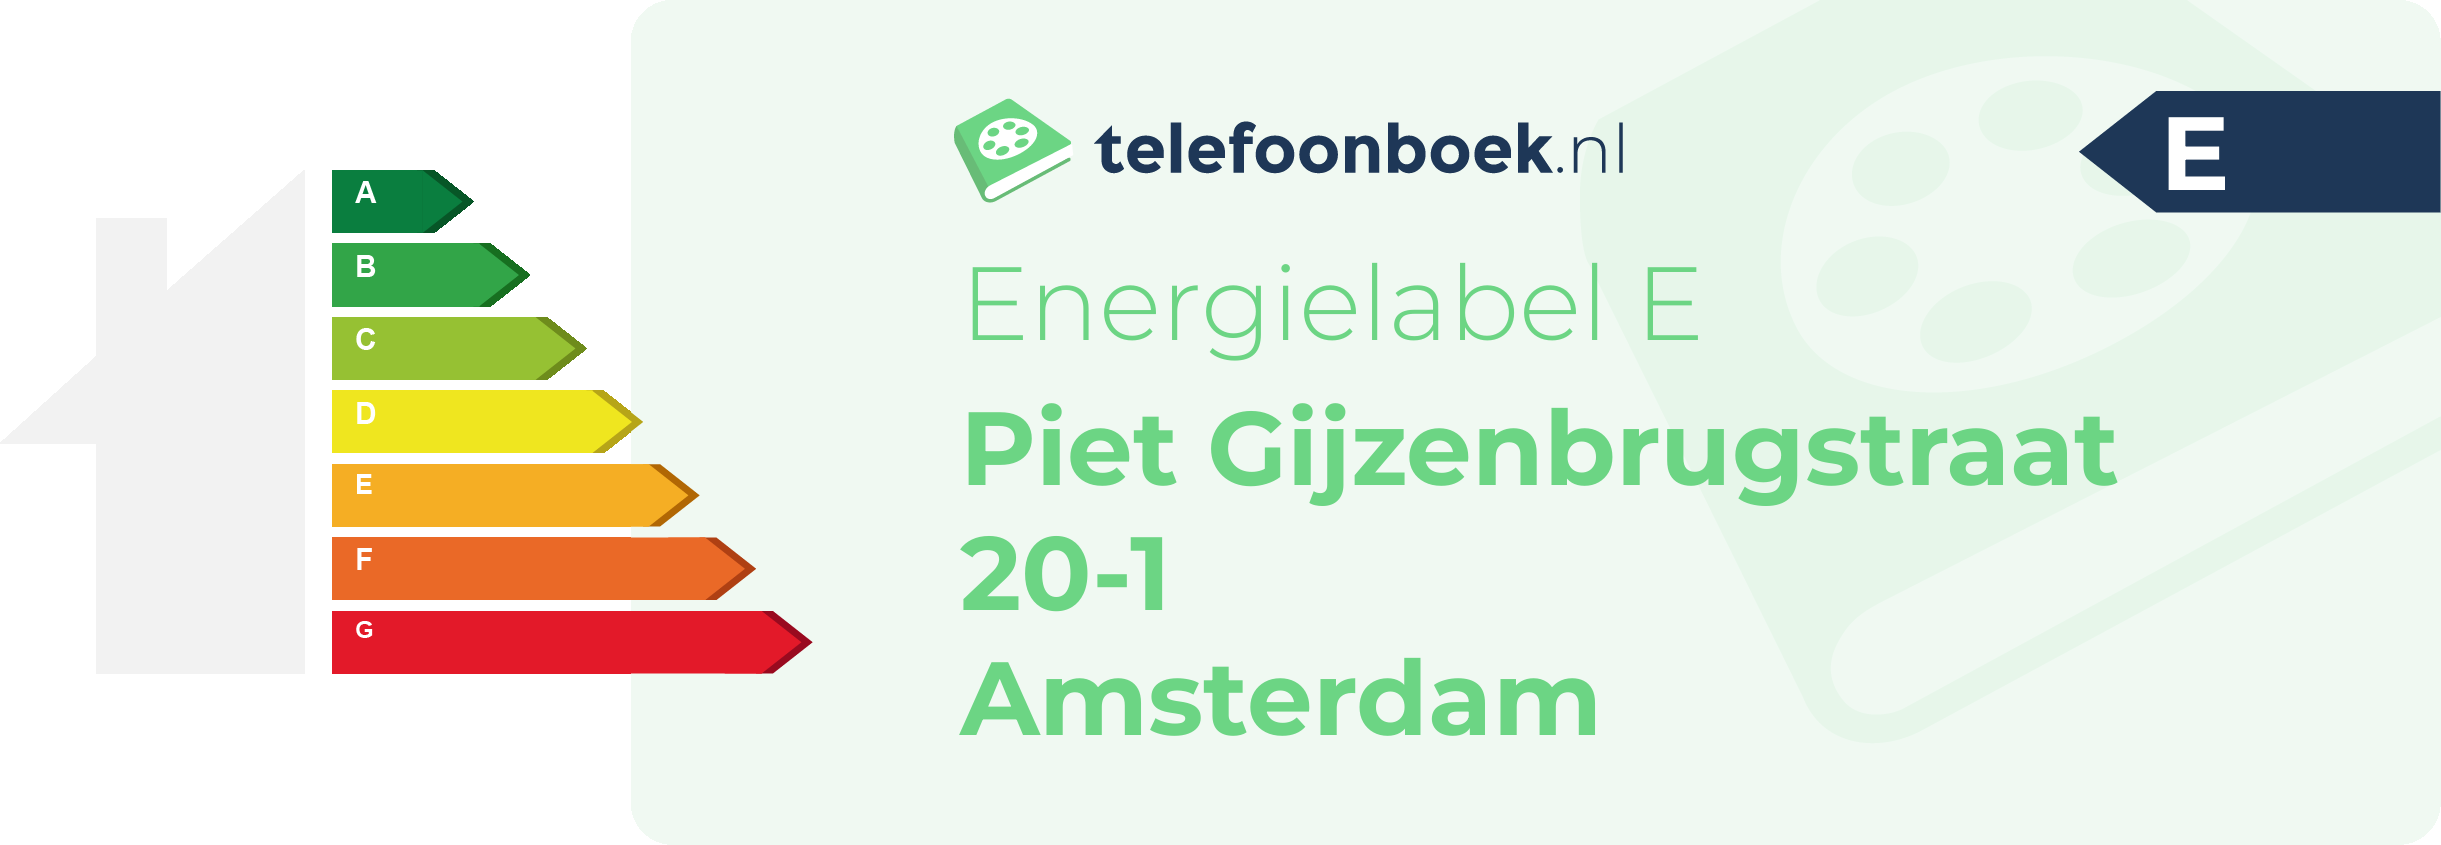 Energielabel Piet Gijzenbrugstraat 20-1 Amsterdam